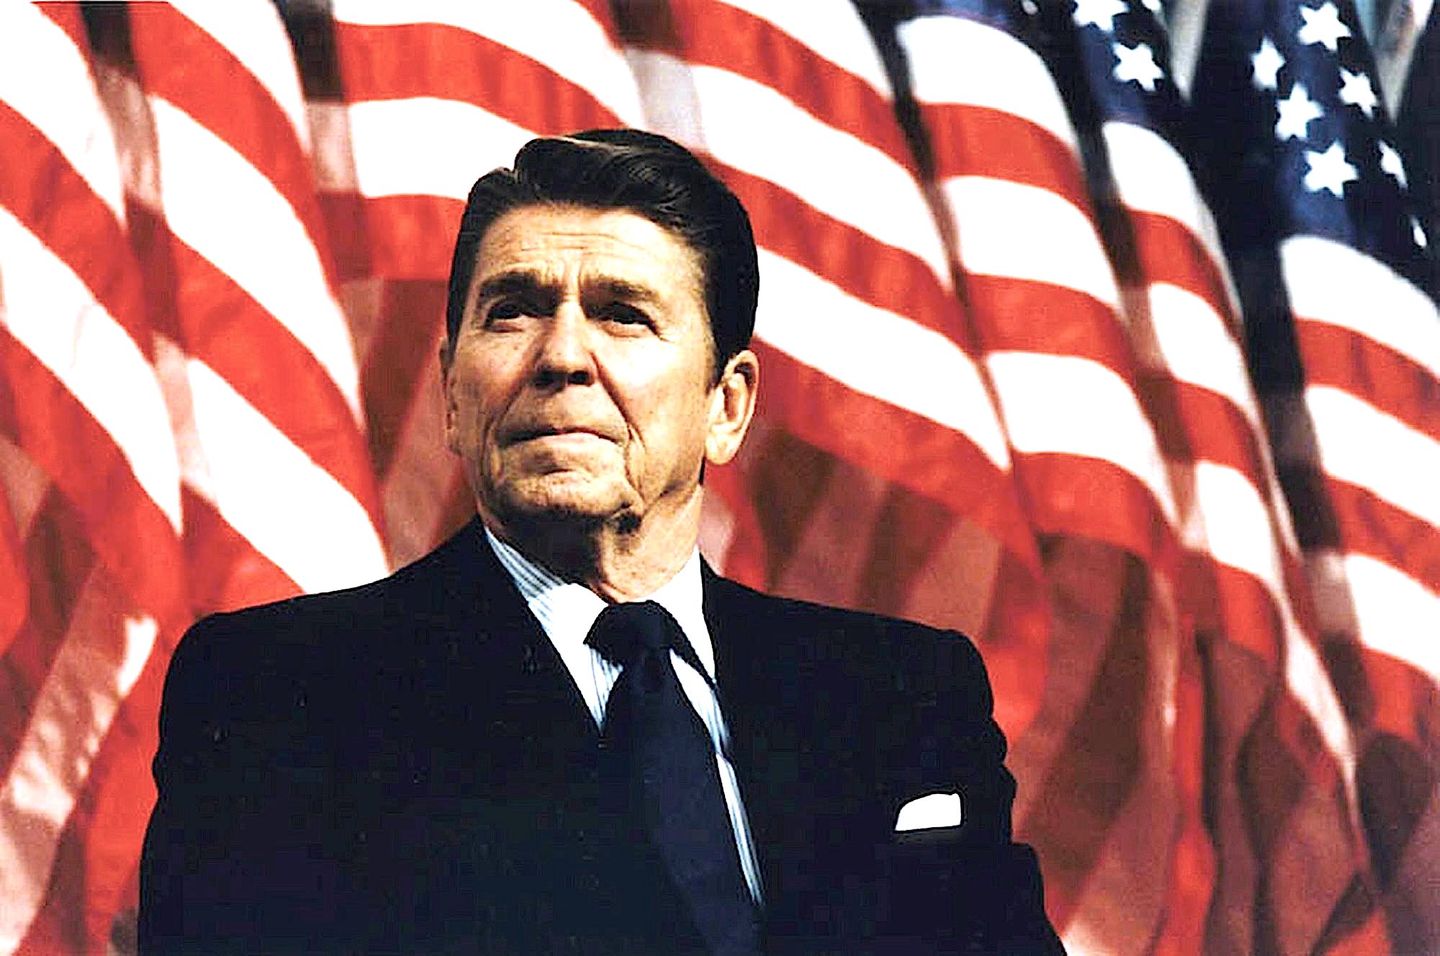 Inside the Beltway: Hari Peringatan Reagan, 1981